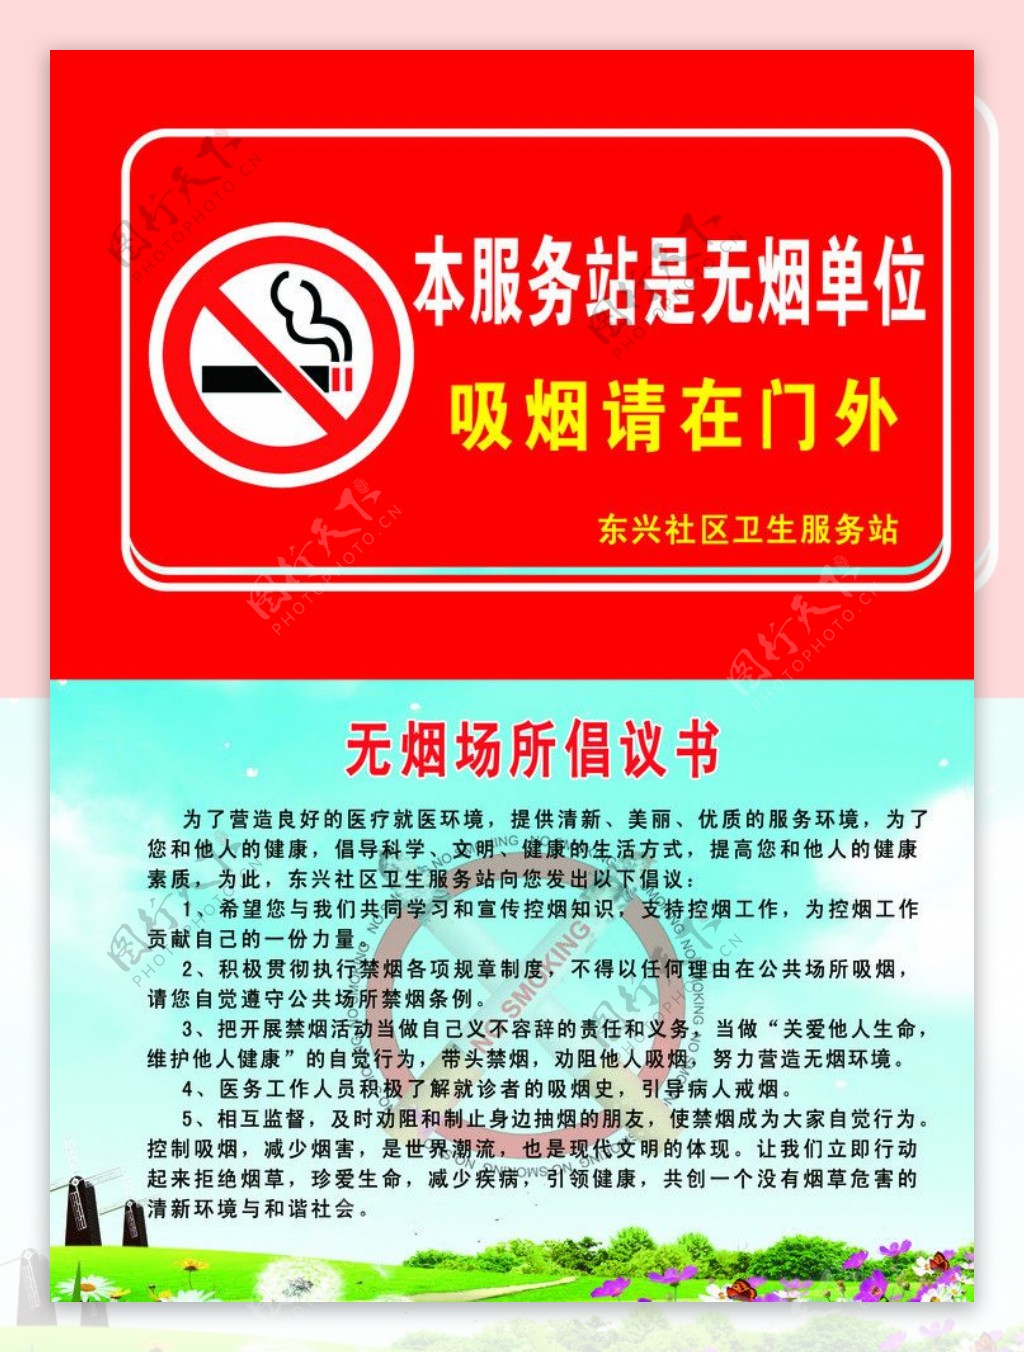 禁烟倡议书图片